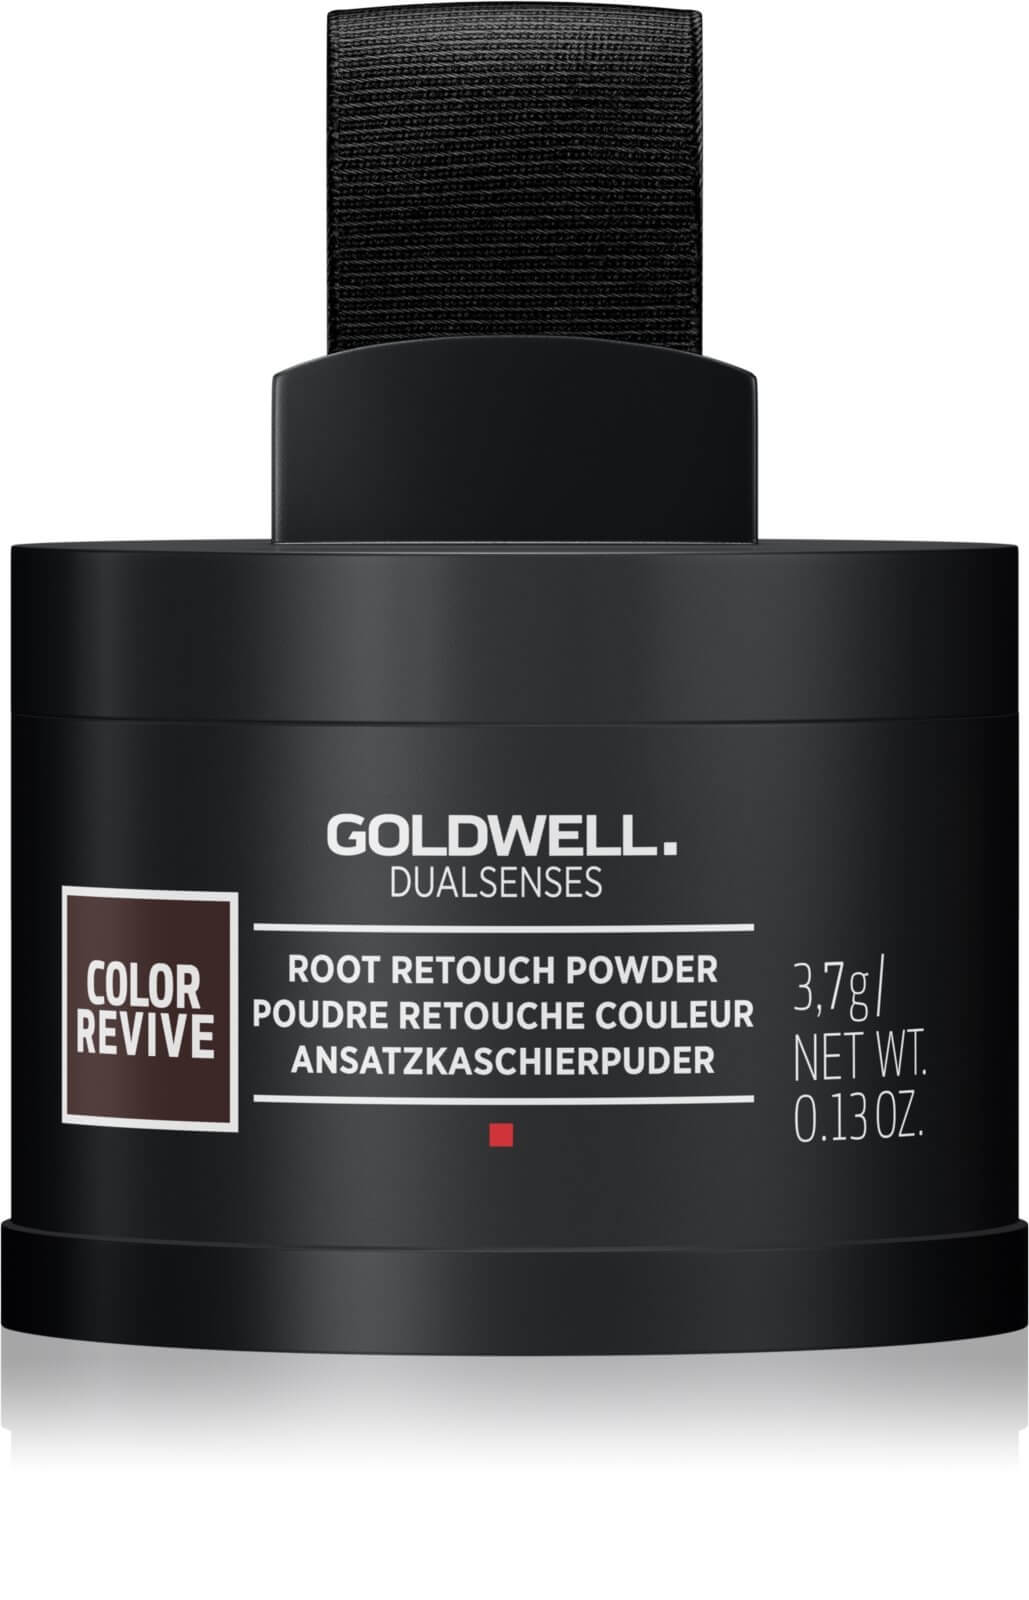 Goldwell Pudr pro zakrytí odrostů Dualsenses Color Revive (Root Retouche Powder) 3,7 g Light Blonde